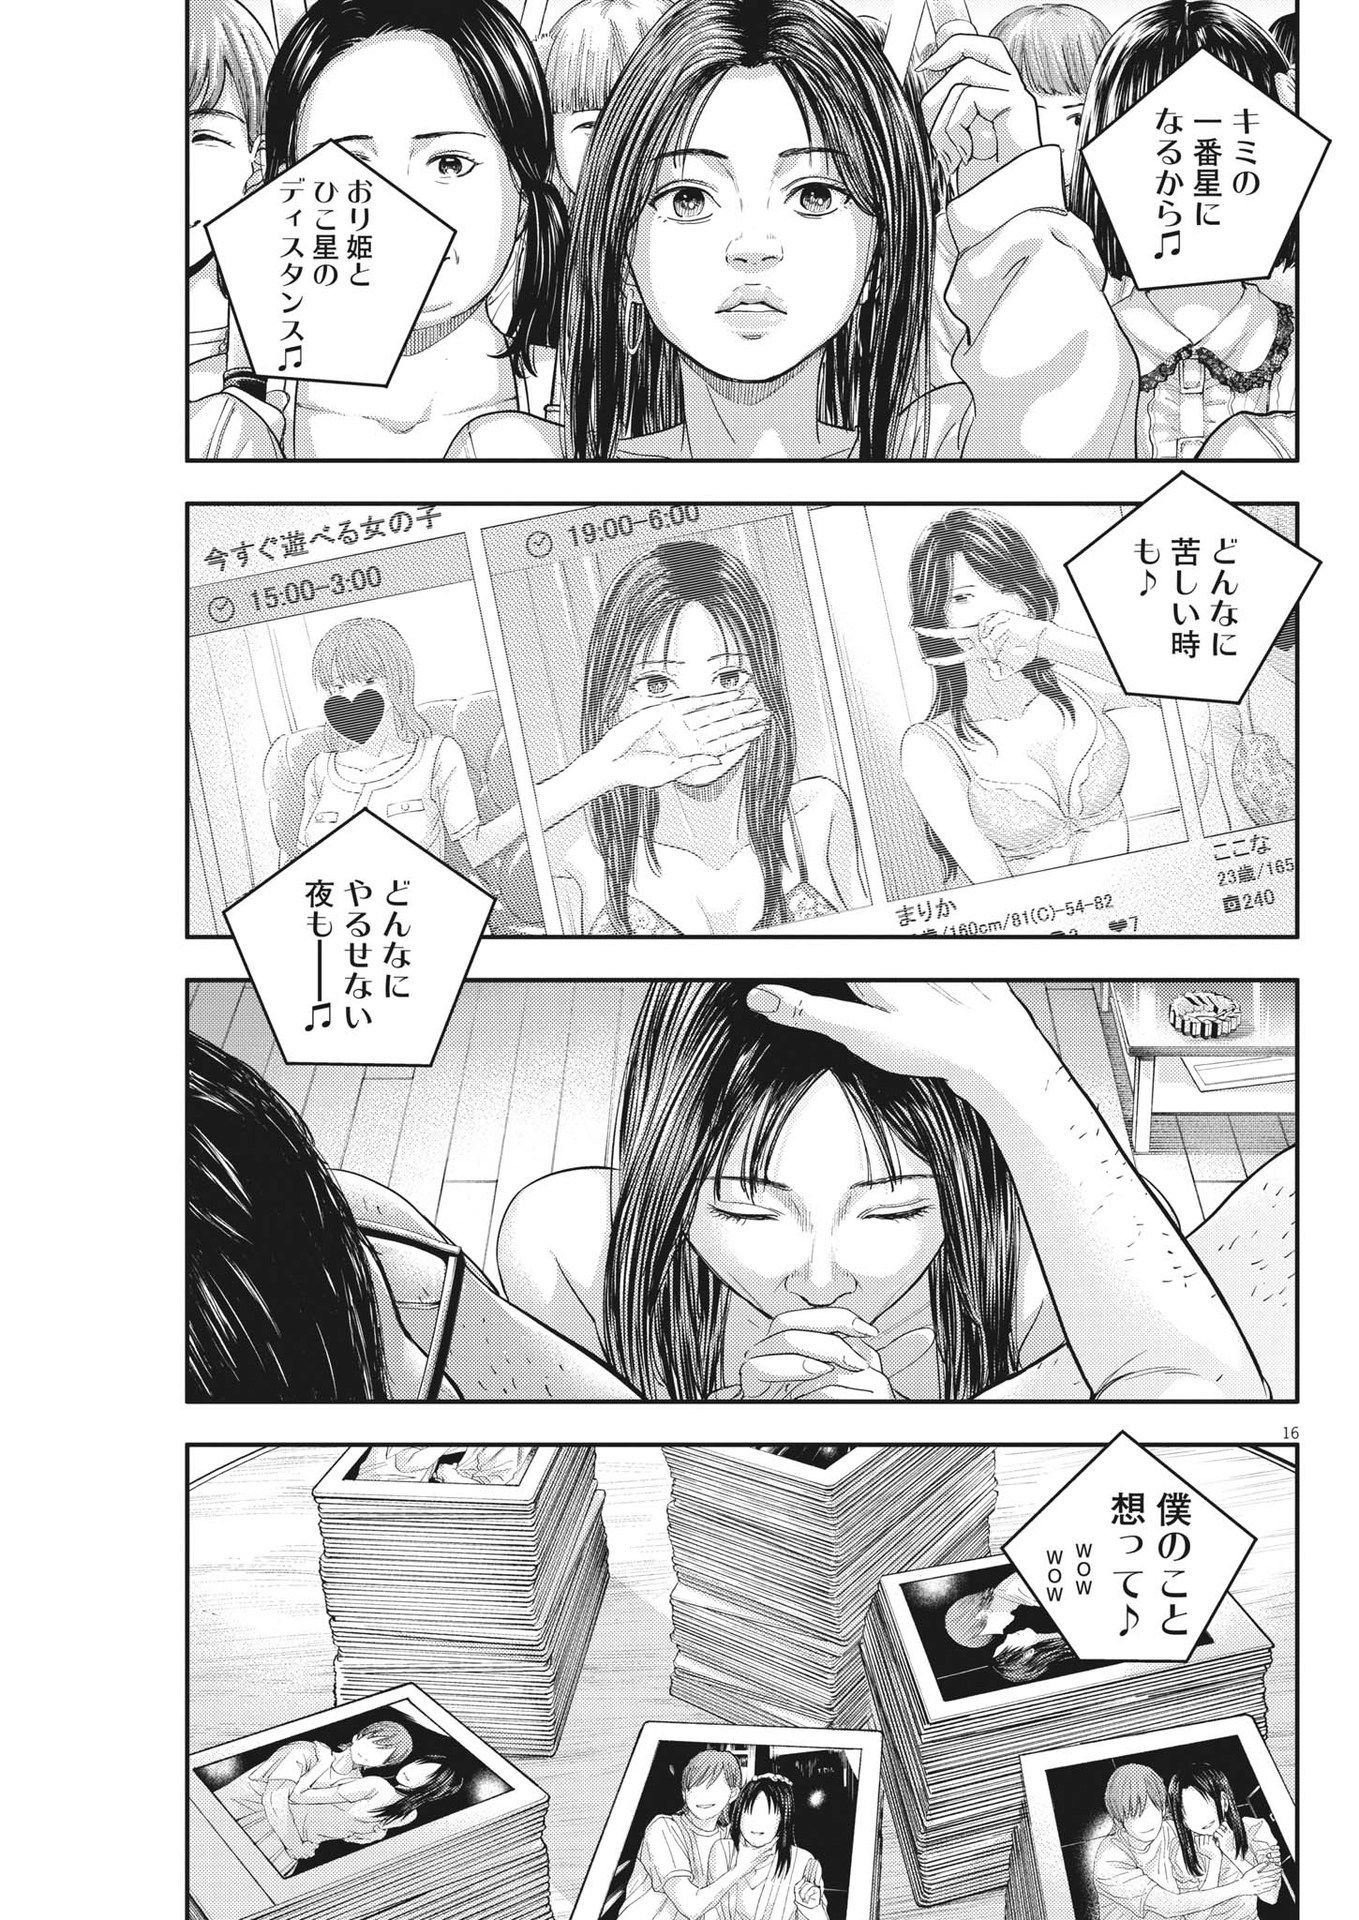 Yumenashi-sensei no Shinroshidou - Chapter 12 - Page 17